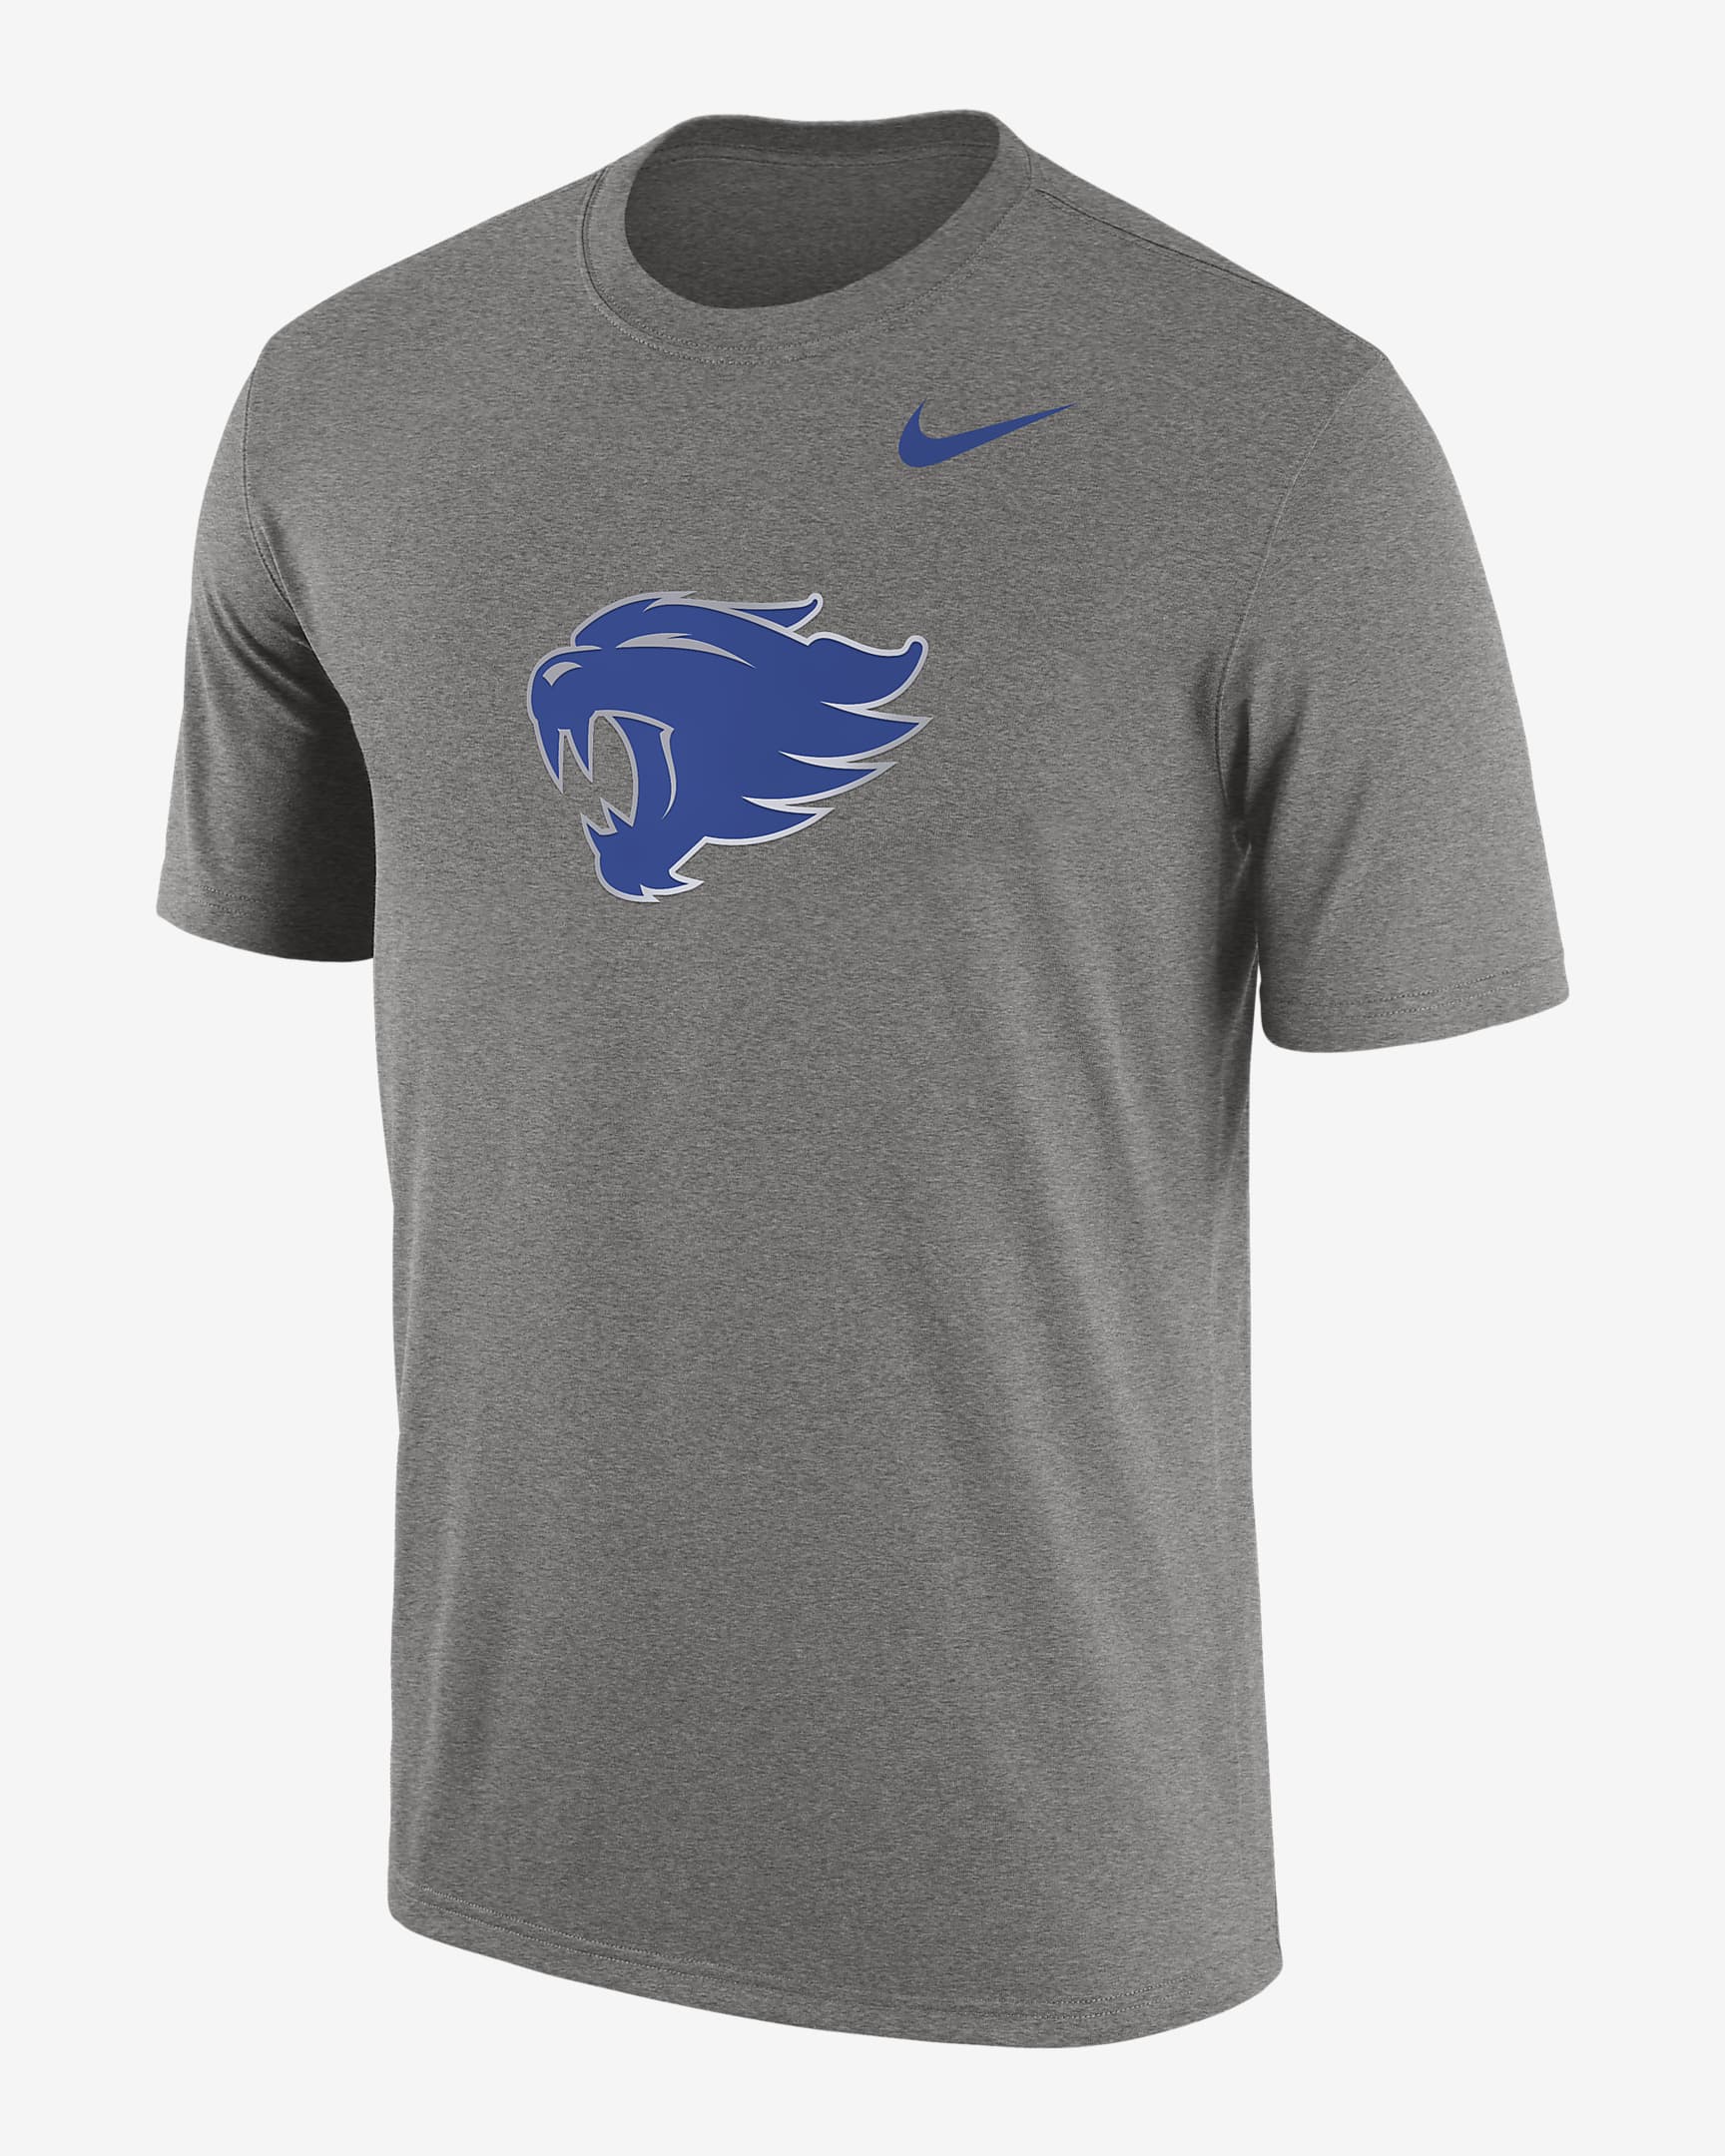 Kentucky Men's Nike College T-Shirt. Nike.com